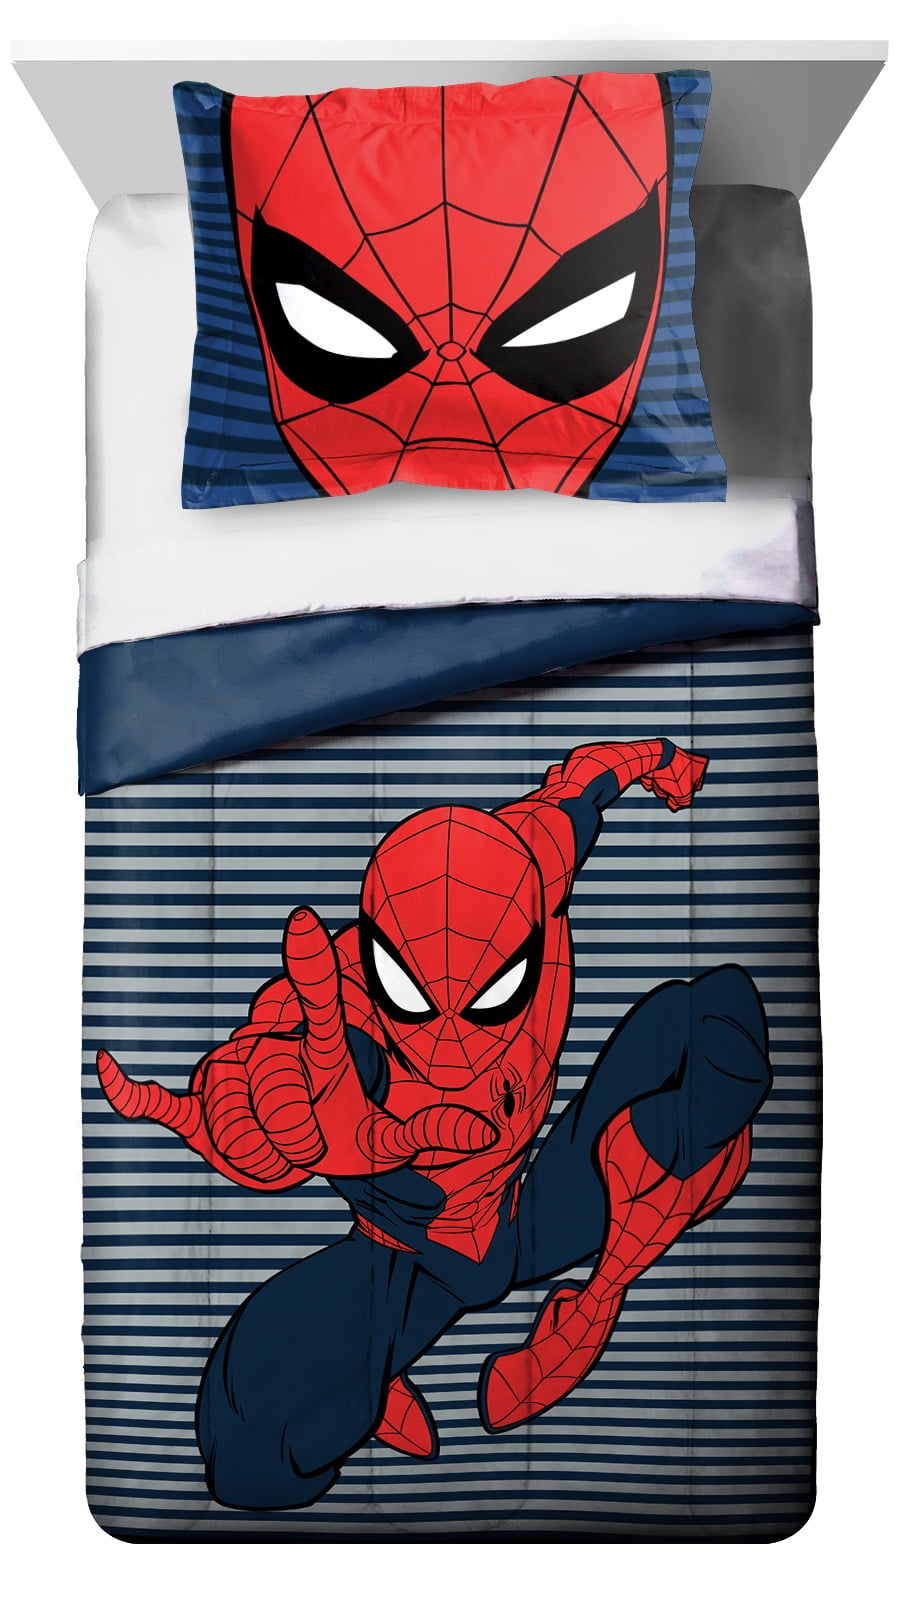 2019 Cartoon Spider-Man Iron Man Cotton Blend Duvet Quilt Cover 3pcs Bedding Set 